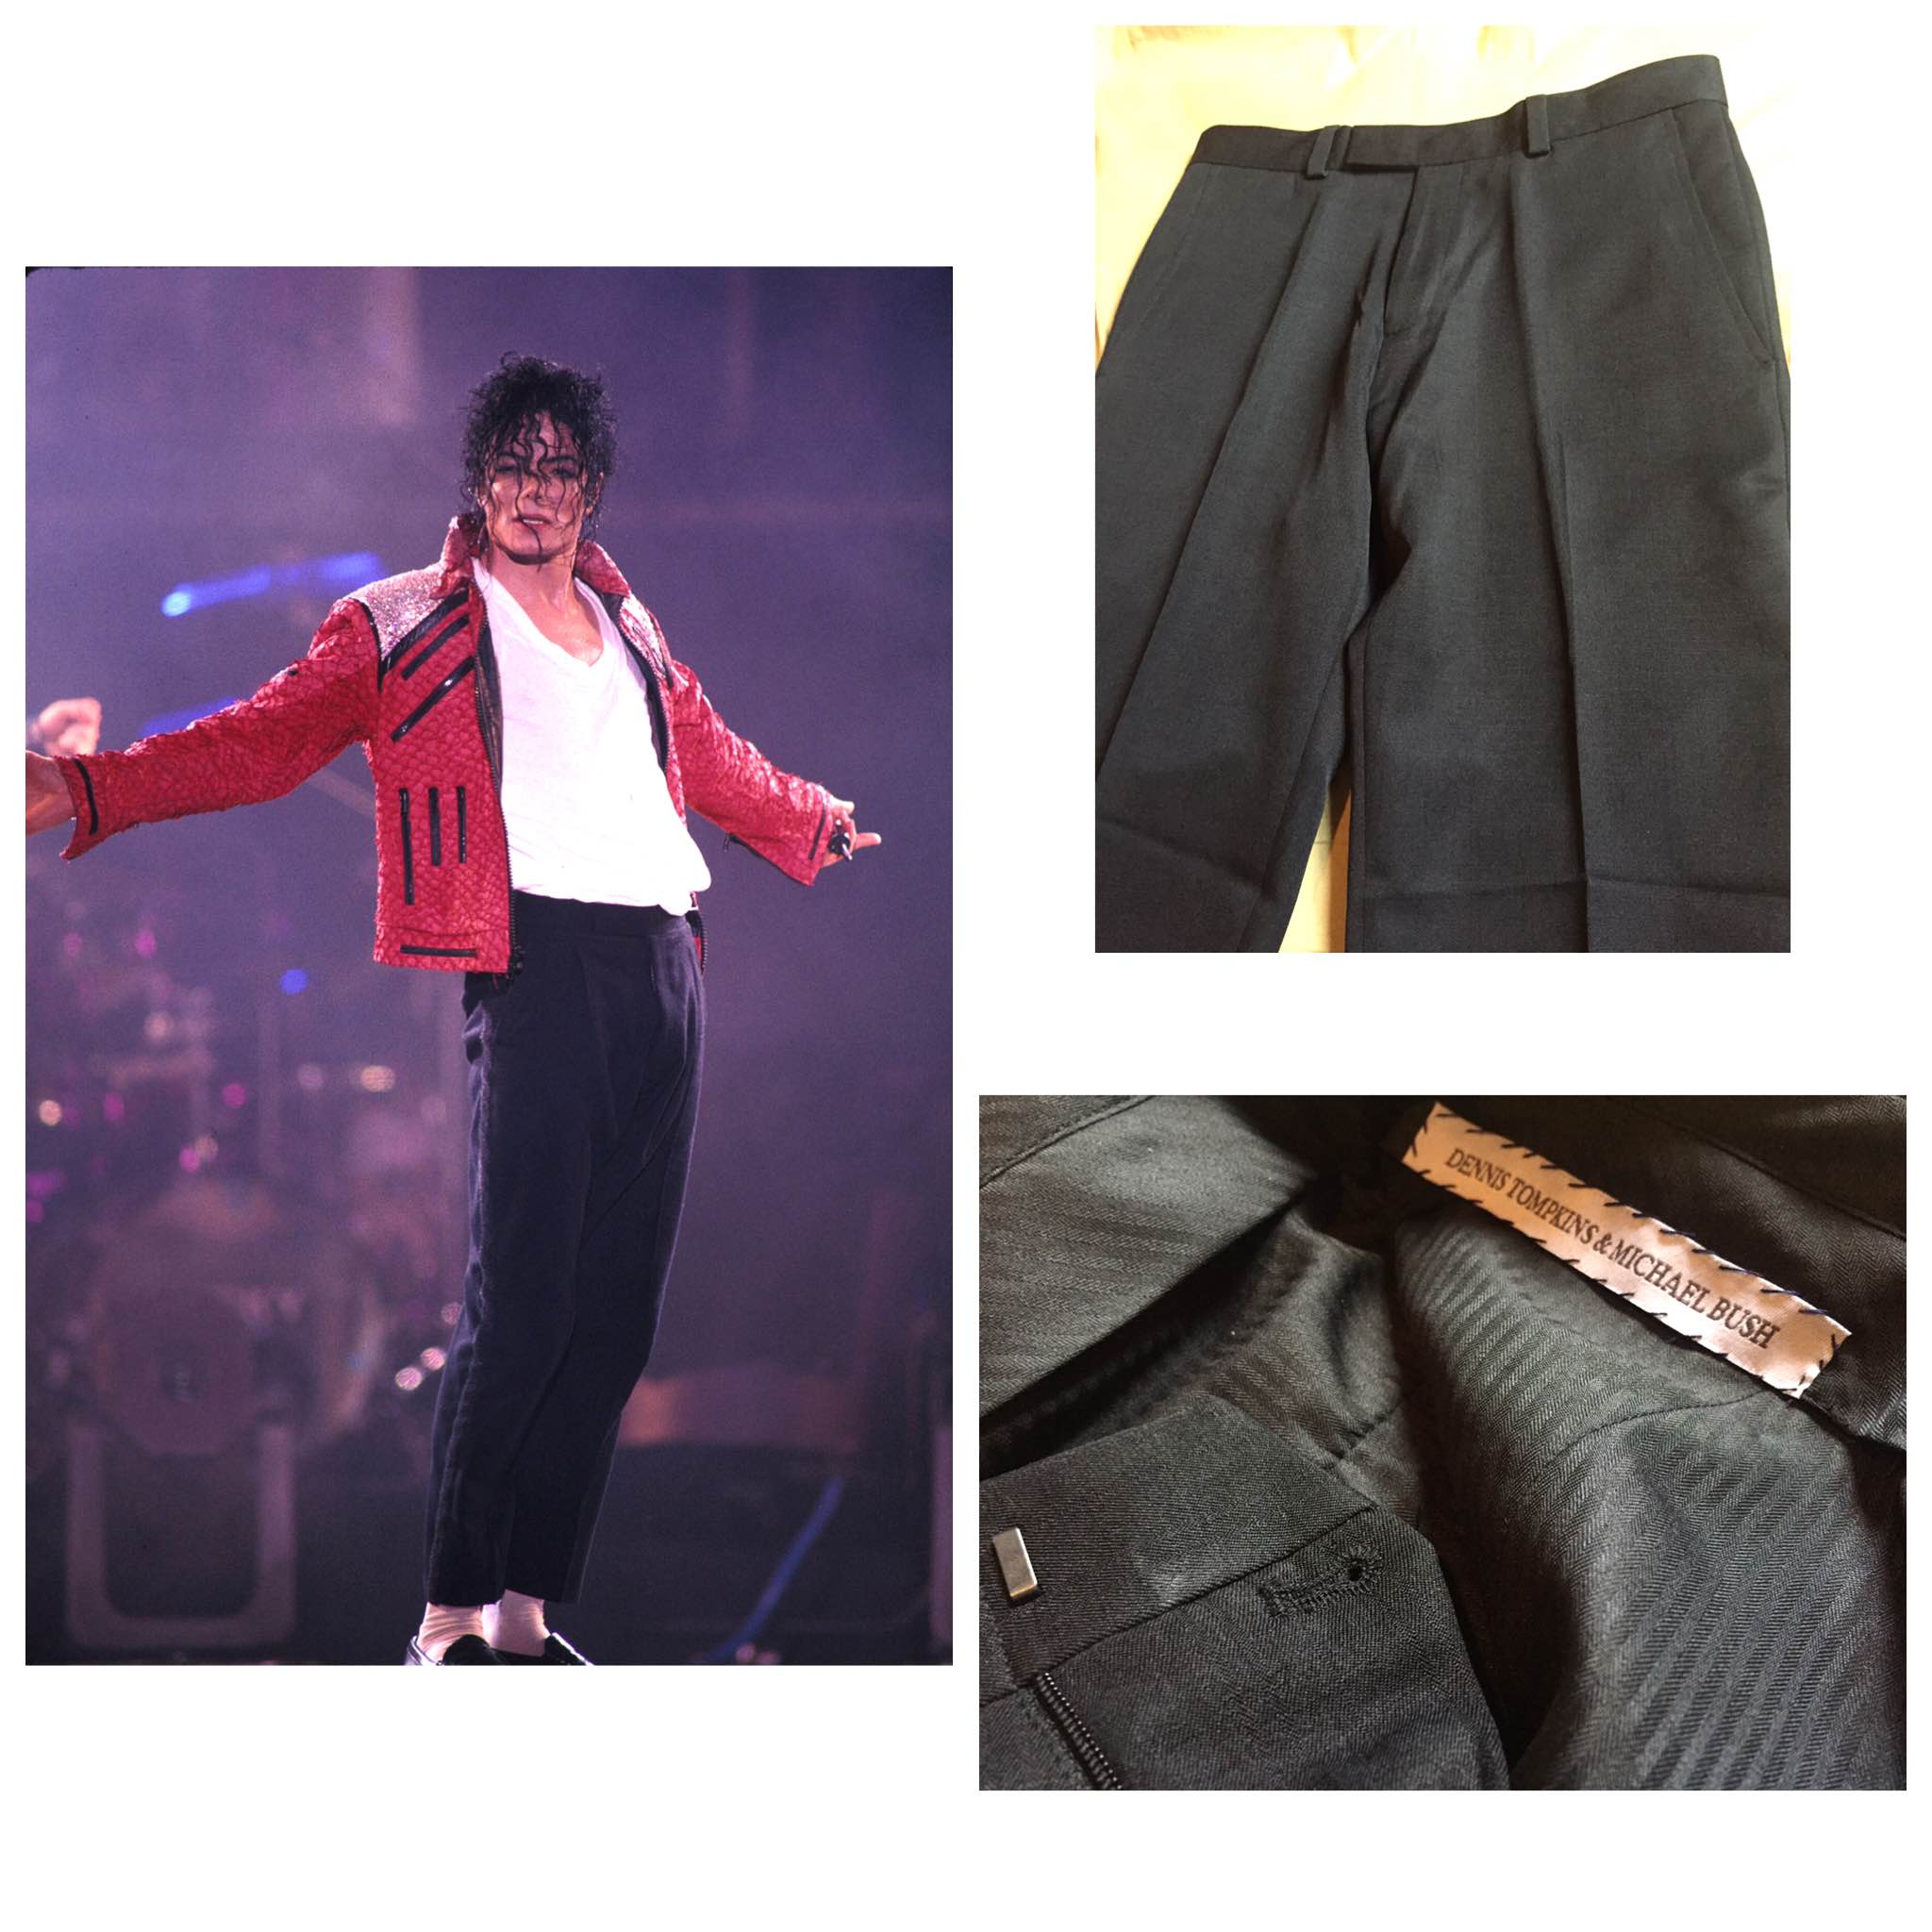 Mod The Sims  Michael Jackson Billie Jean Video Leather Suit